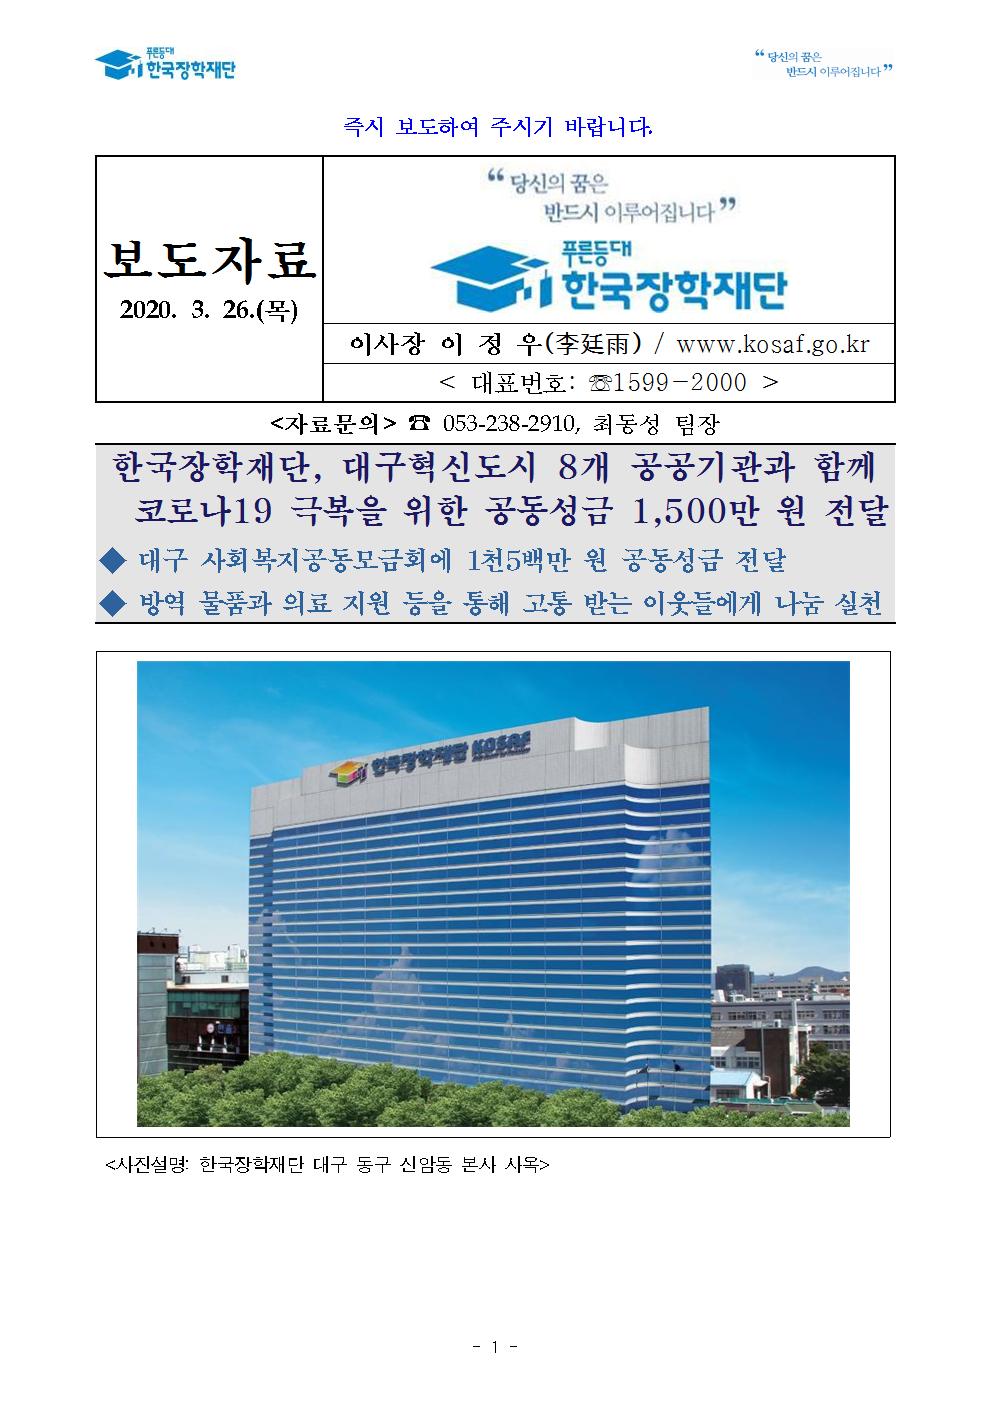 03-26(목)[보도자료] 한국장학재단 코로나19 극복을 위한 공동성금 1,500만 원 전달001.jpg